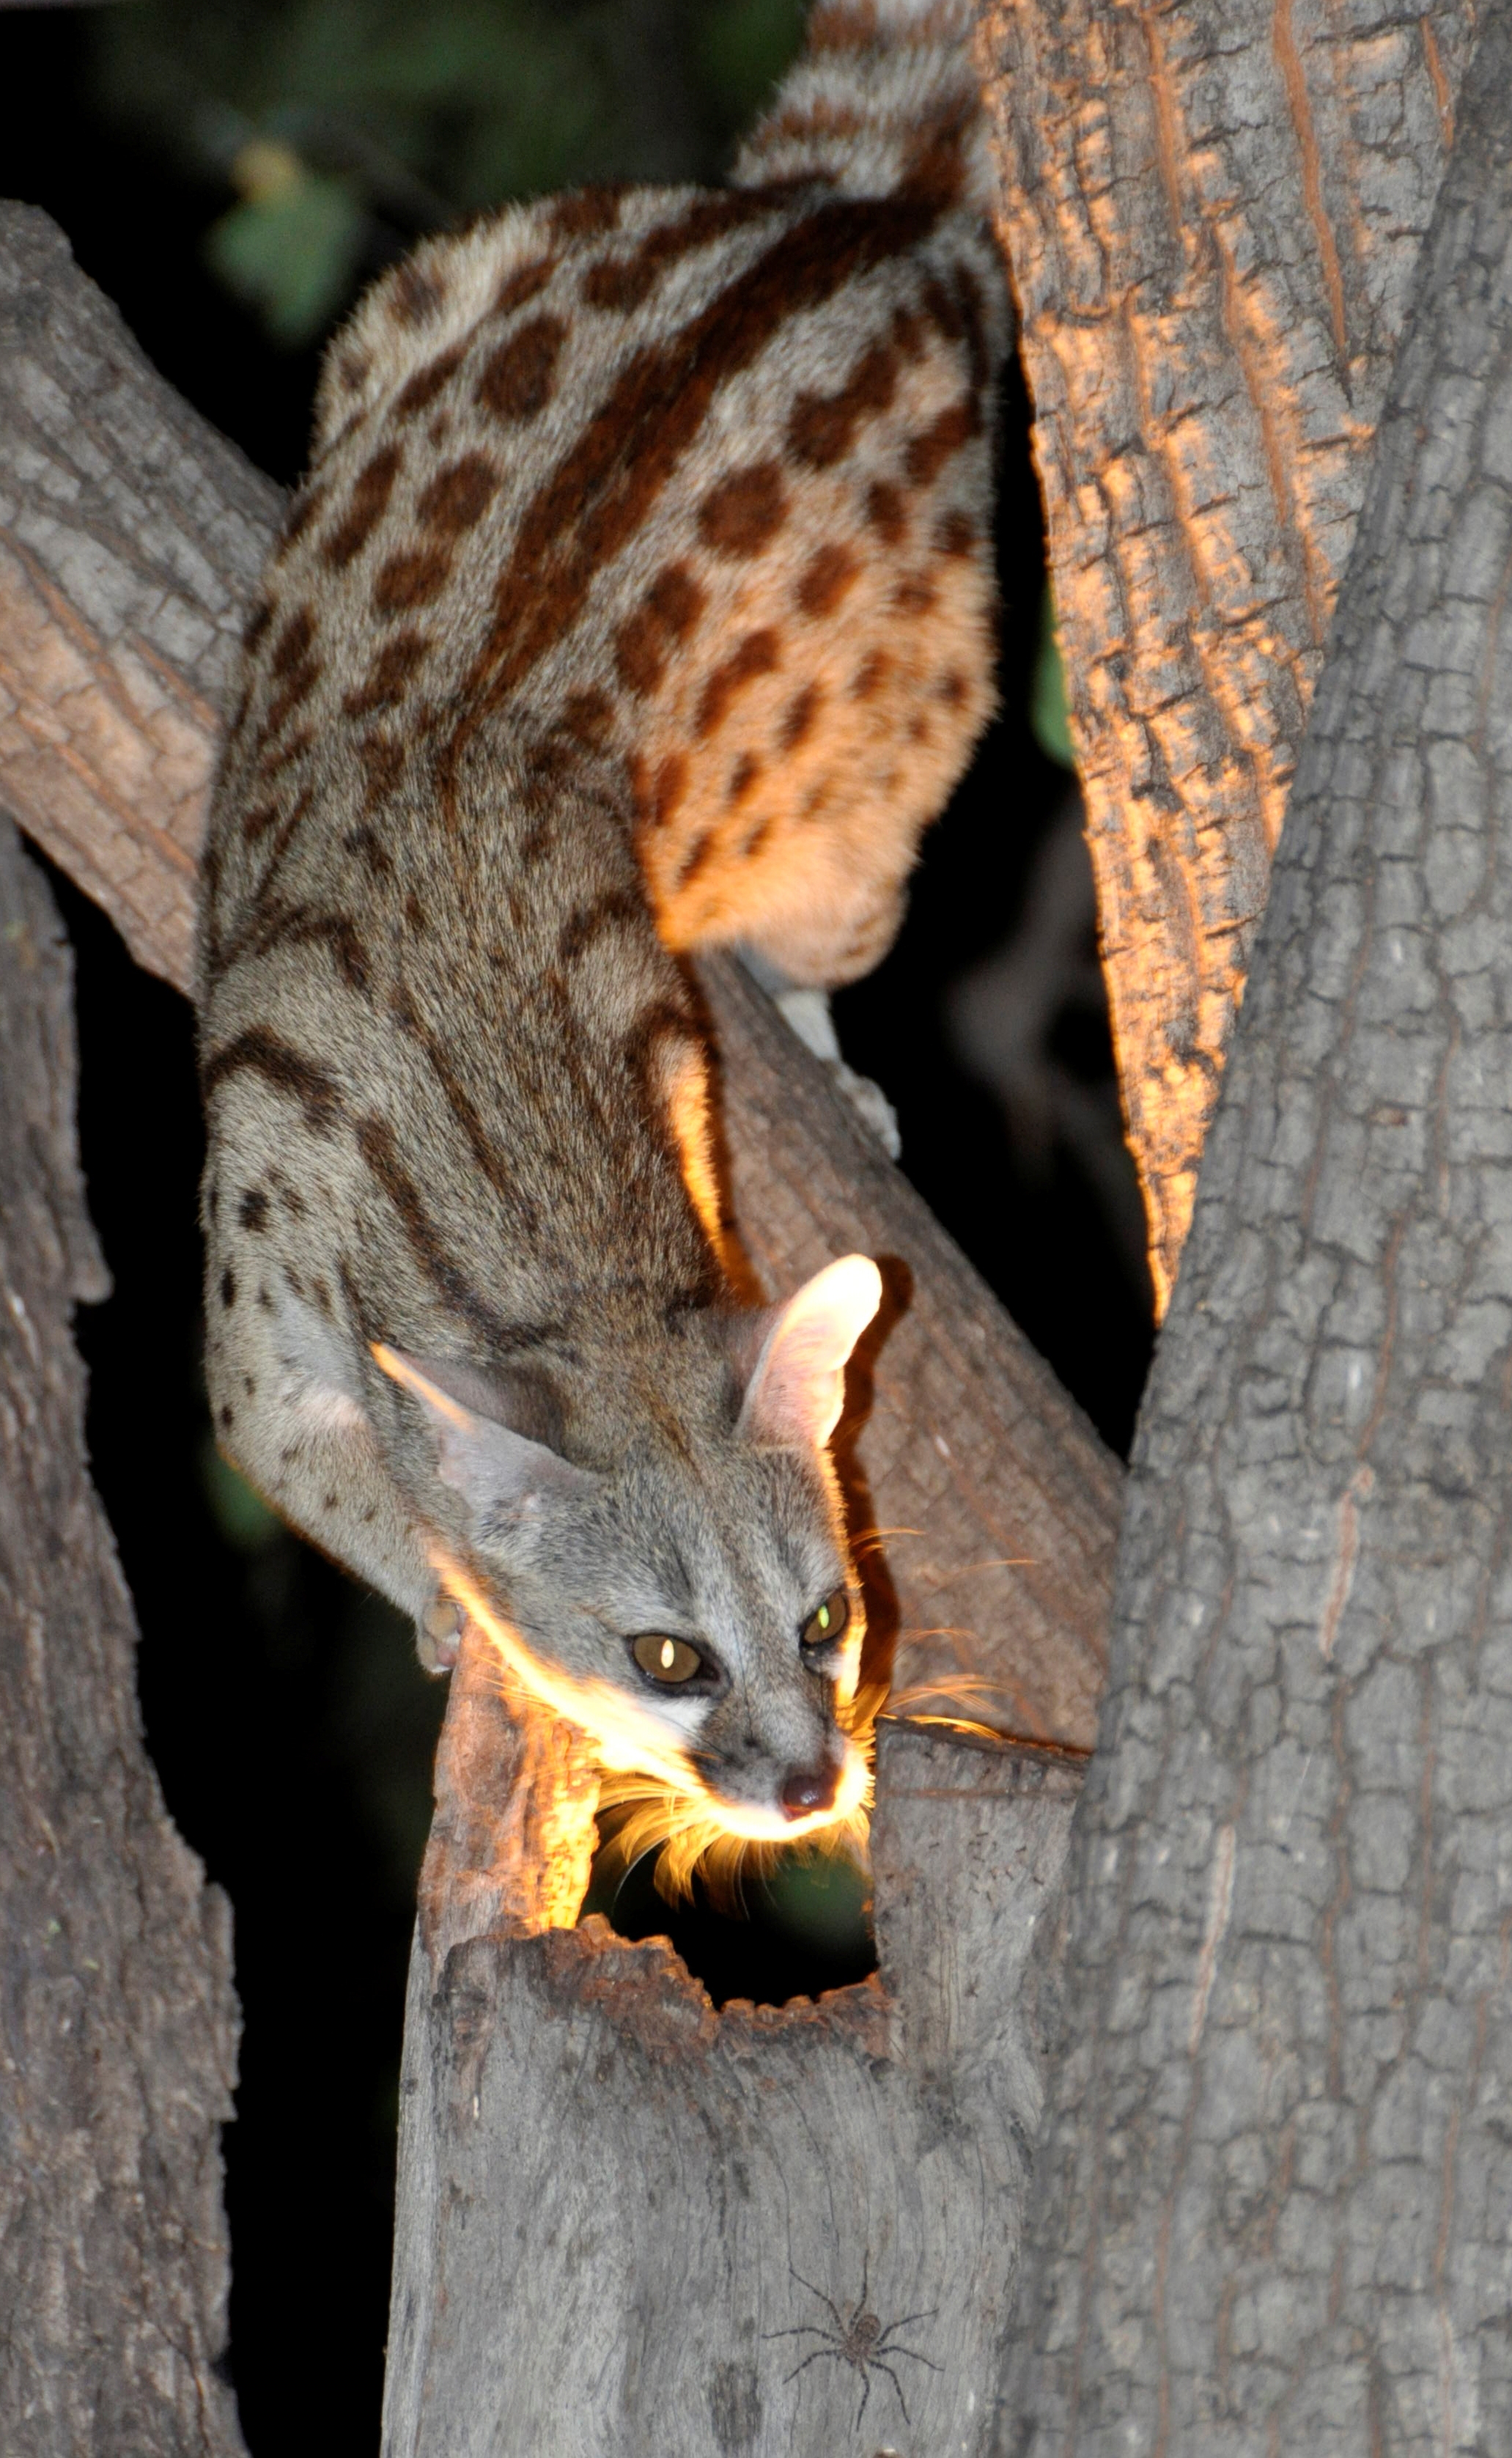 Botswana: African wildcat, nocturnal animal, endangered species